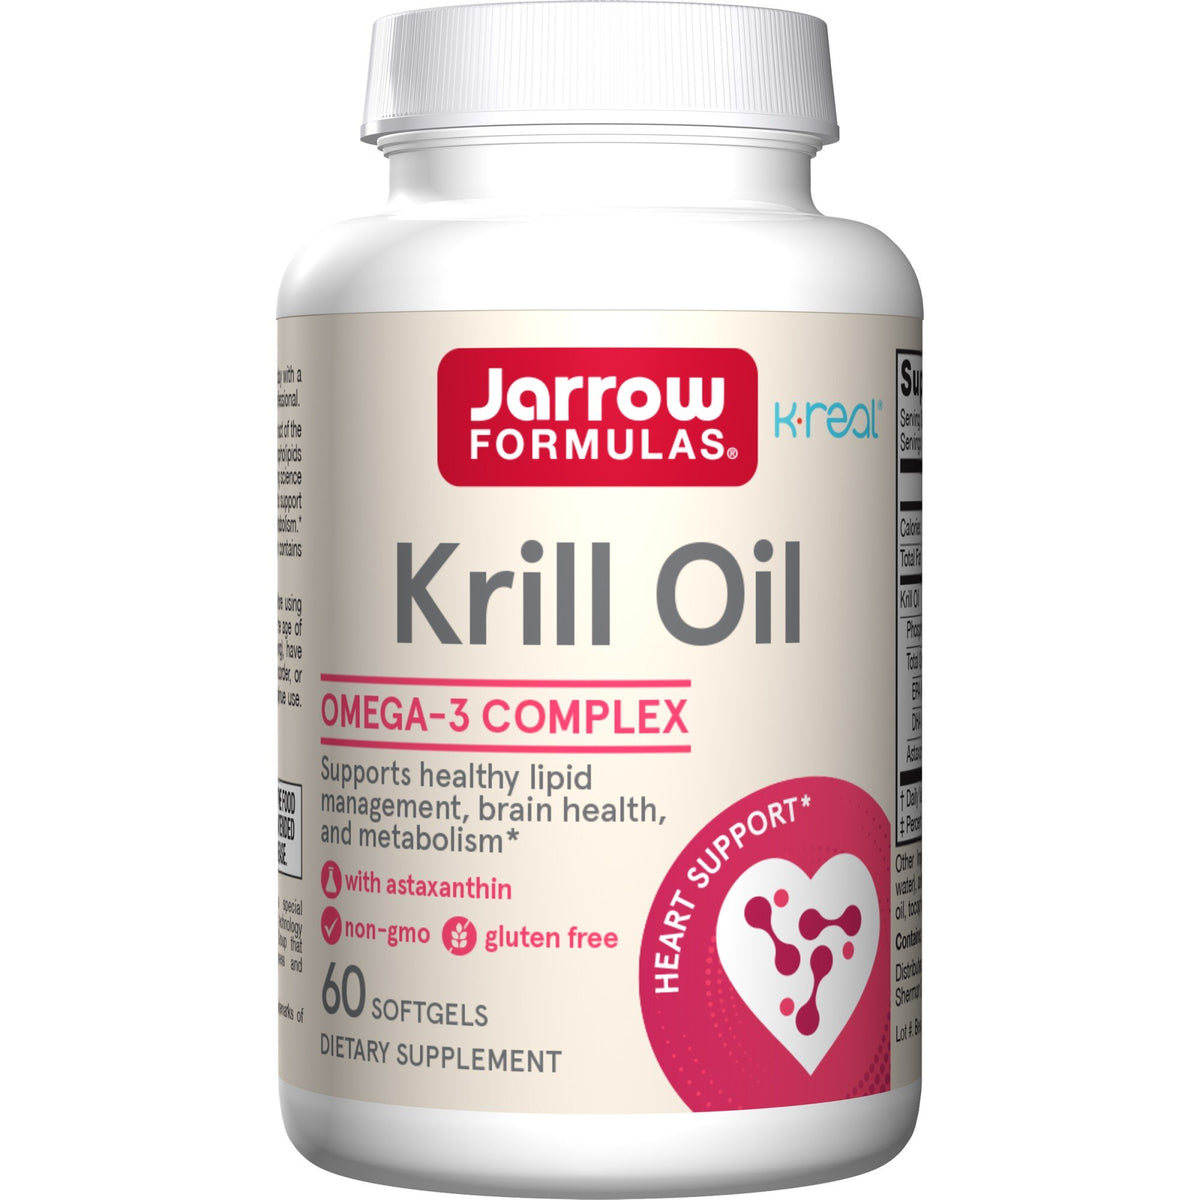 Jarrow Formulas Krill Oil 60 Softgel